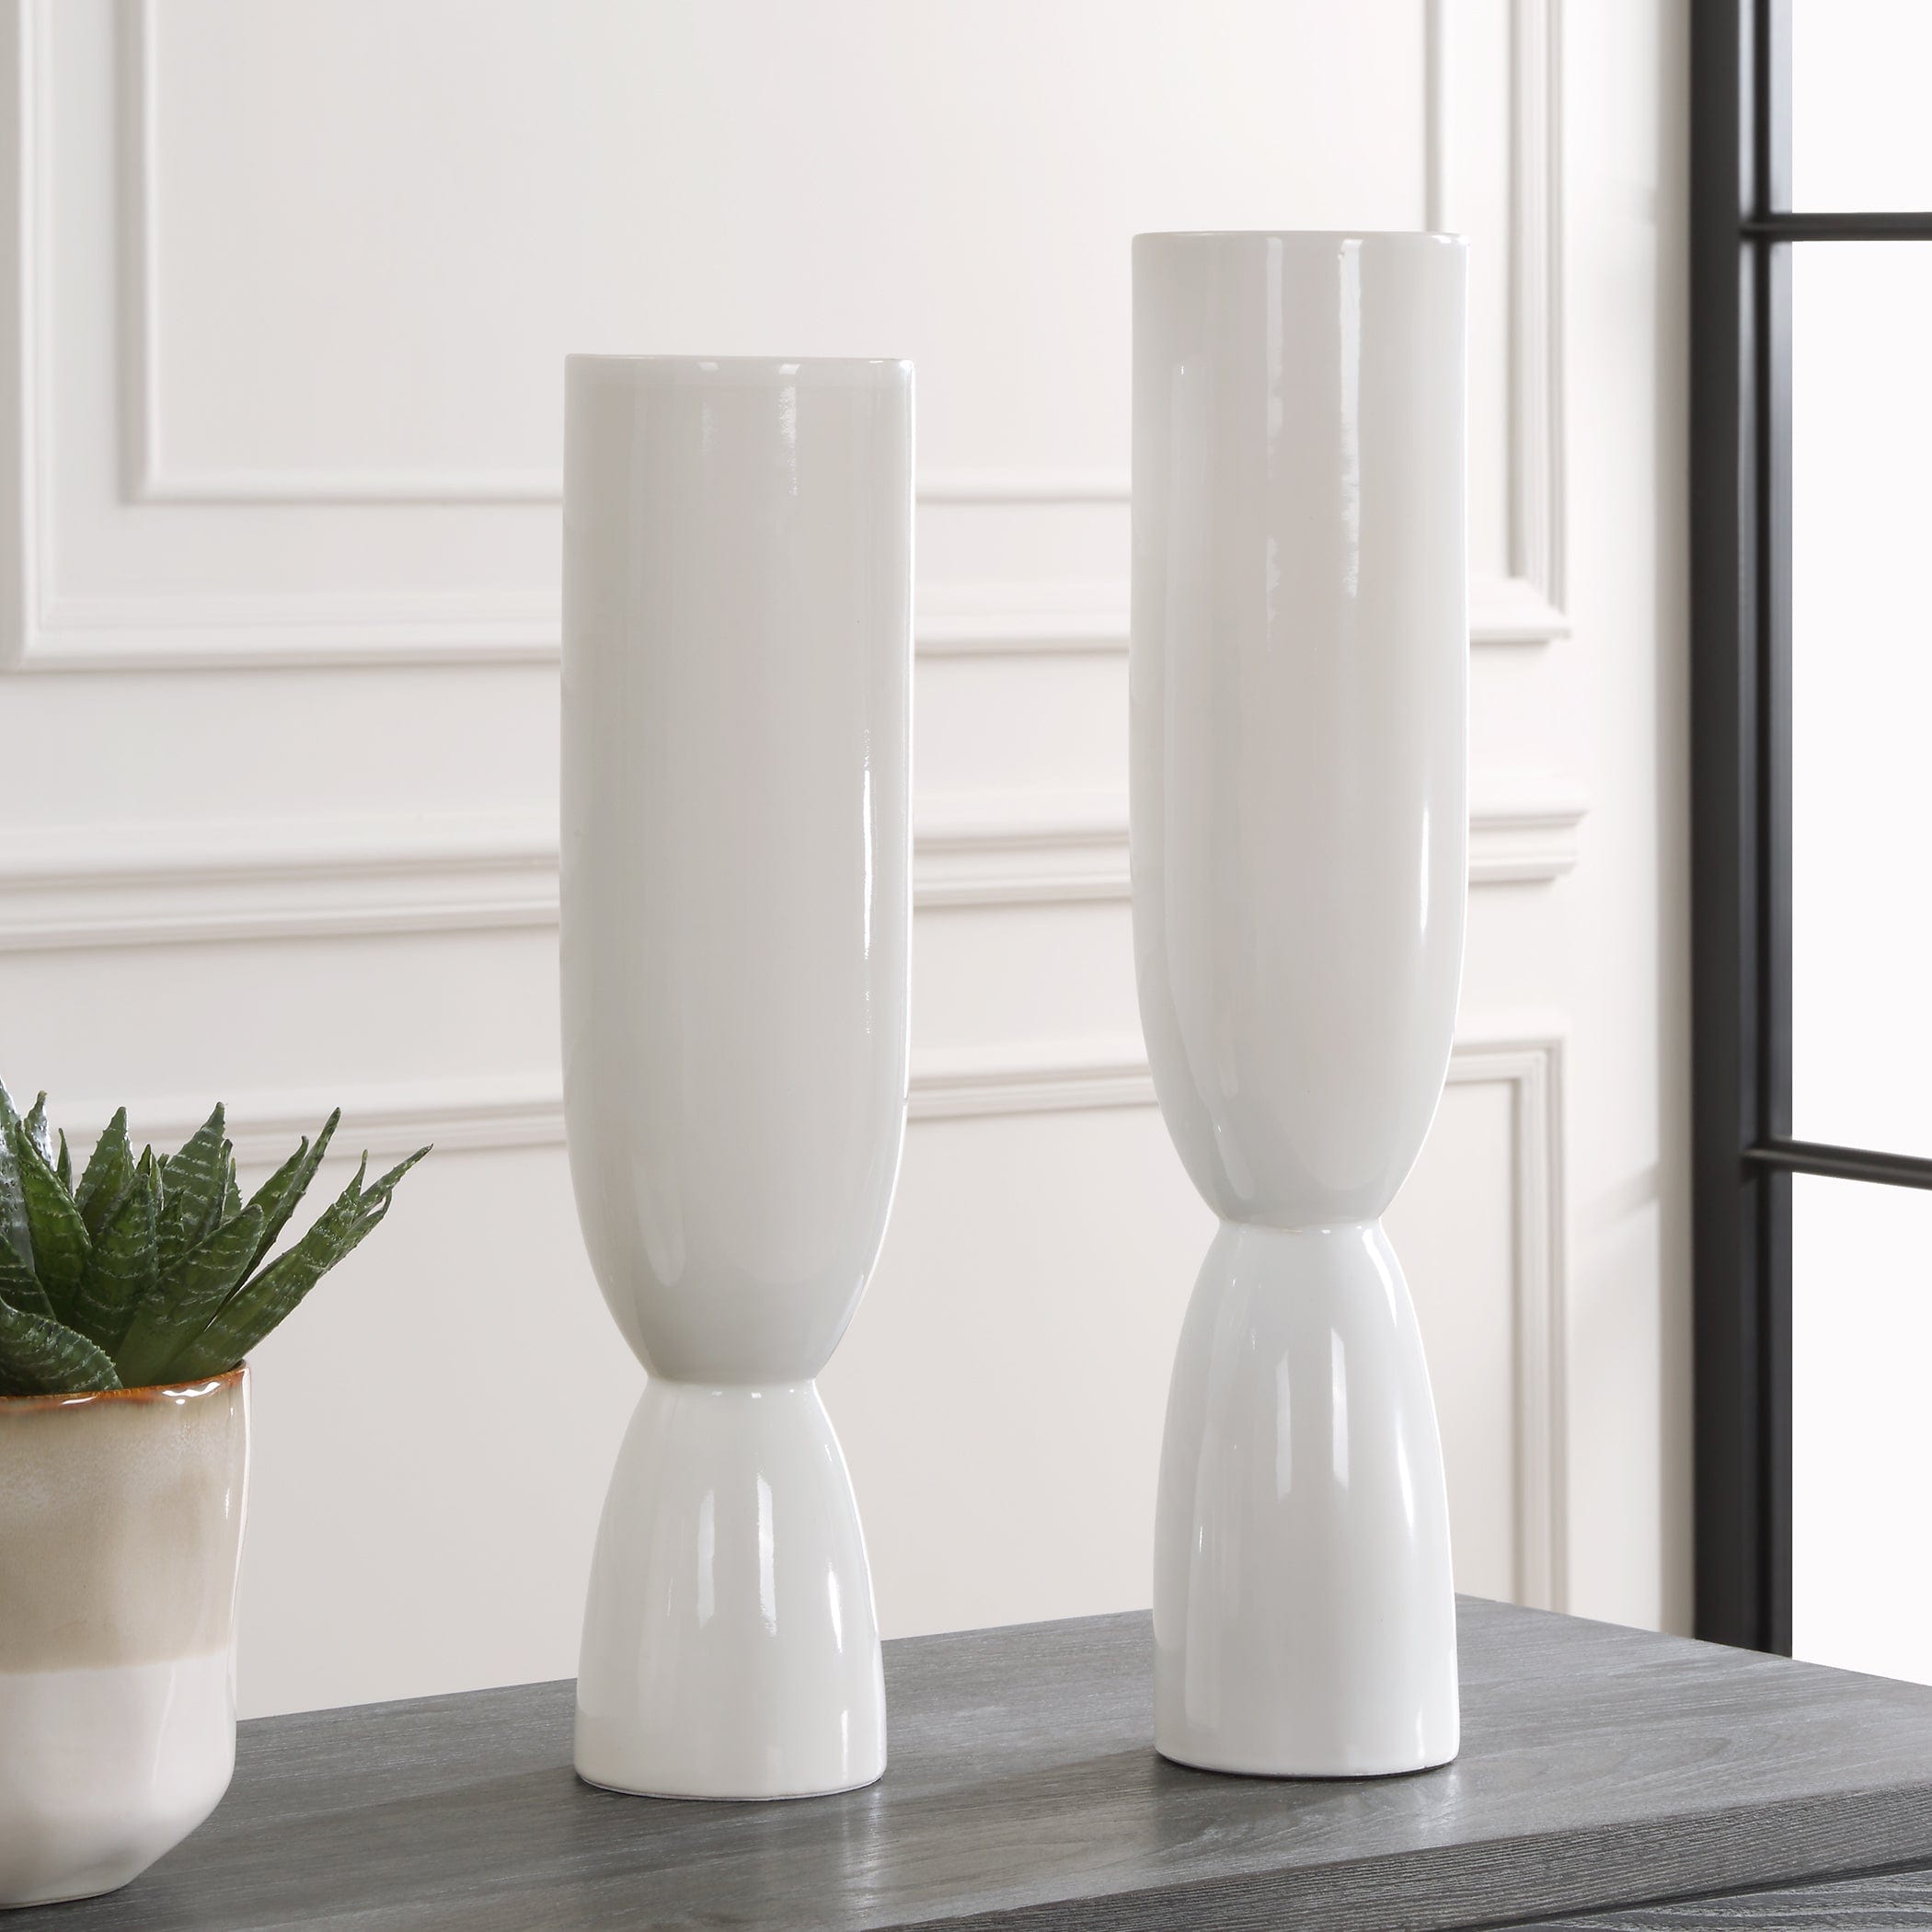 Kimist White Vases, S/2 Uttermost